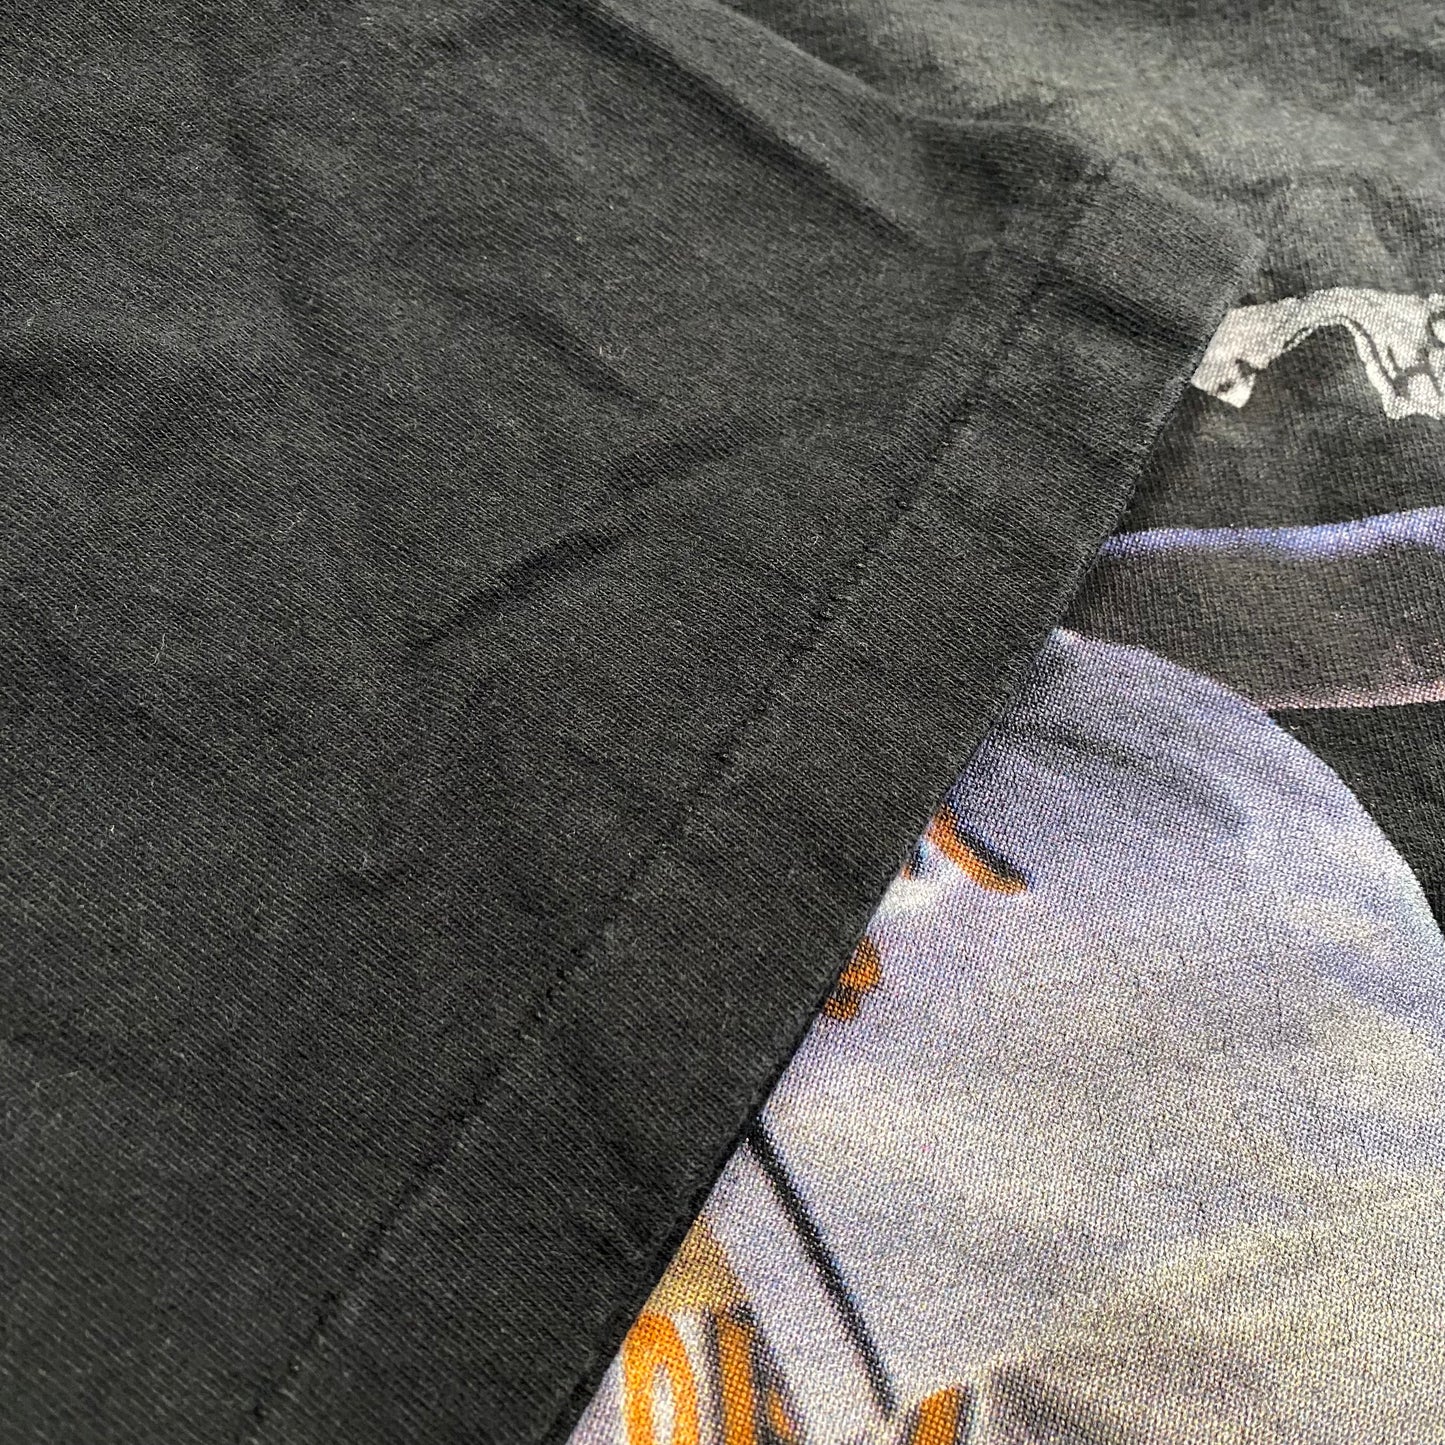 90’s Cal Ripken Orioles T-shirt Sz XL (A3074)